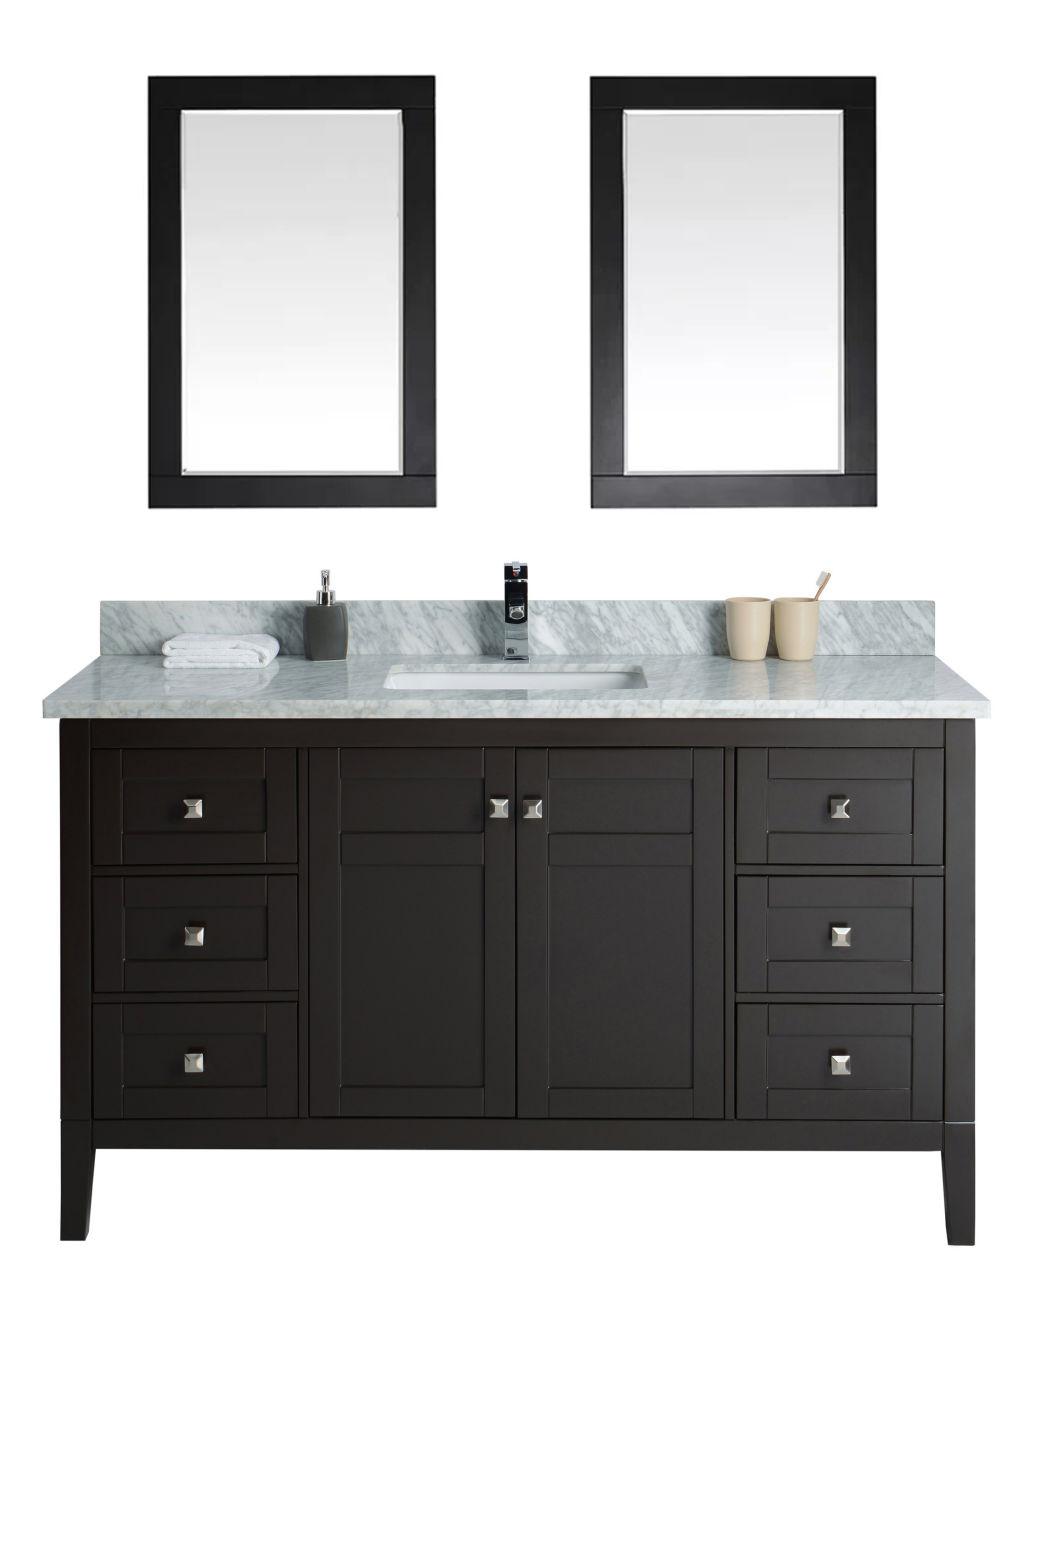 Deluxe Black Double Basin Marble Countertop Solid Wood Bathroom Dresser Vanity Cabinet